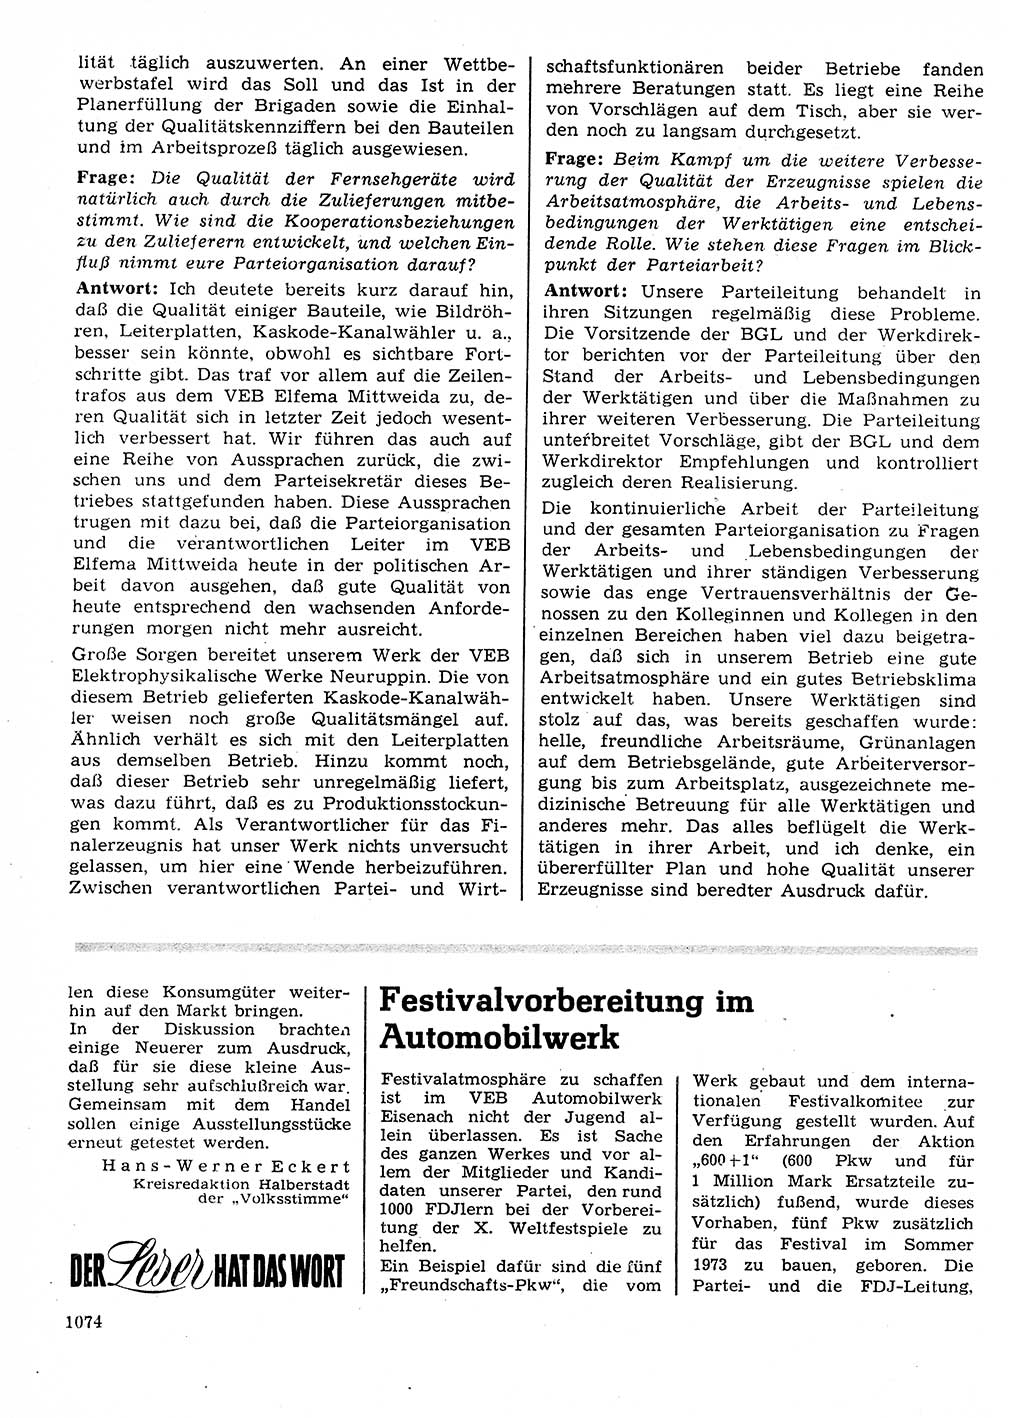 Neuer Weg (NW), Organ des Zentralkomitees (ZK) der SED (Sozialistische Einheitspartei Deutschlands) für Fragen des Parteilebens, 27. Jahrgang [Deutsche Demokratische Republik (DDR)] 1972, Seite 1074 (NW ZK SED DDR 1972, S. 1074)